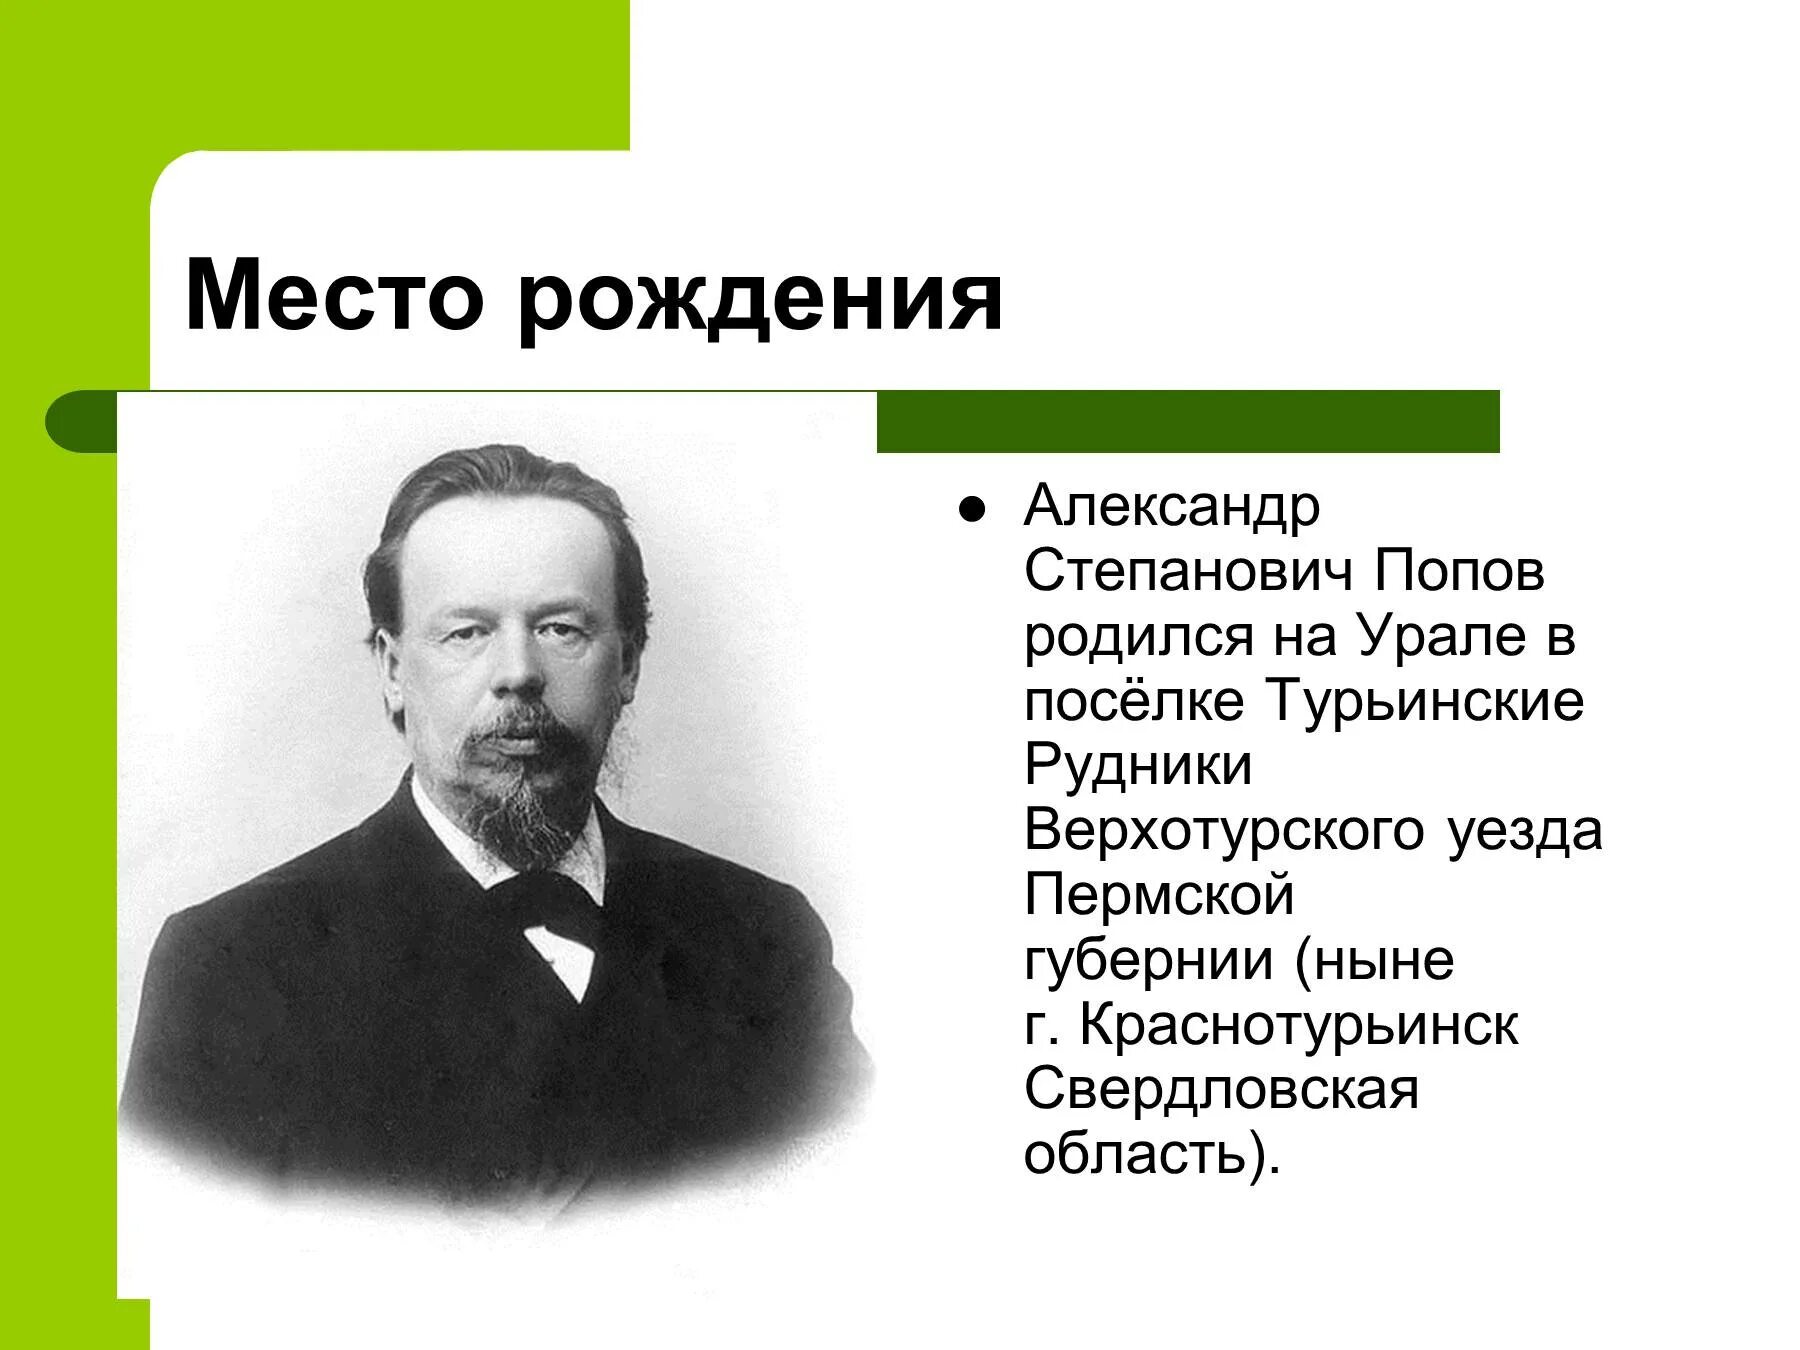 Попов изобретатель радио.